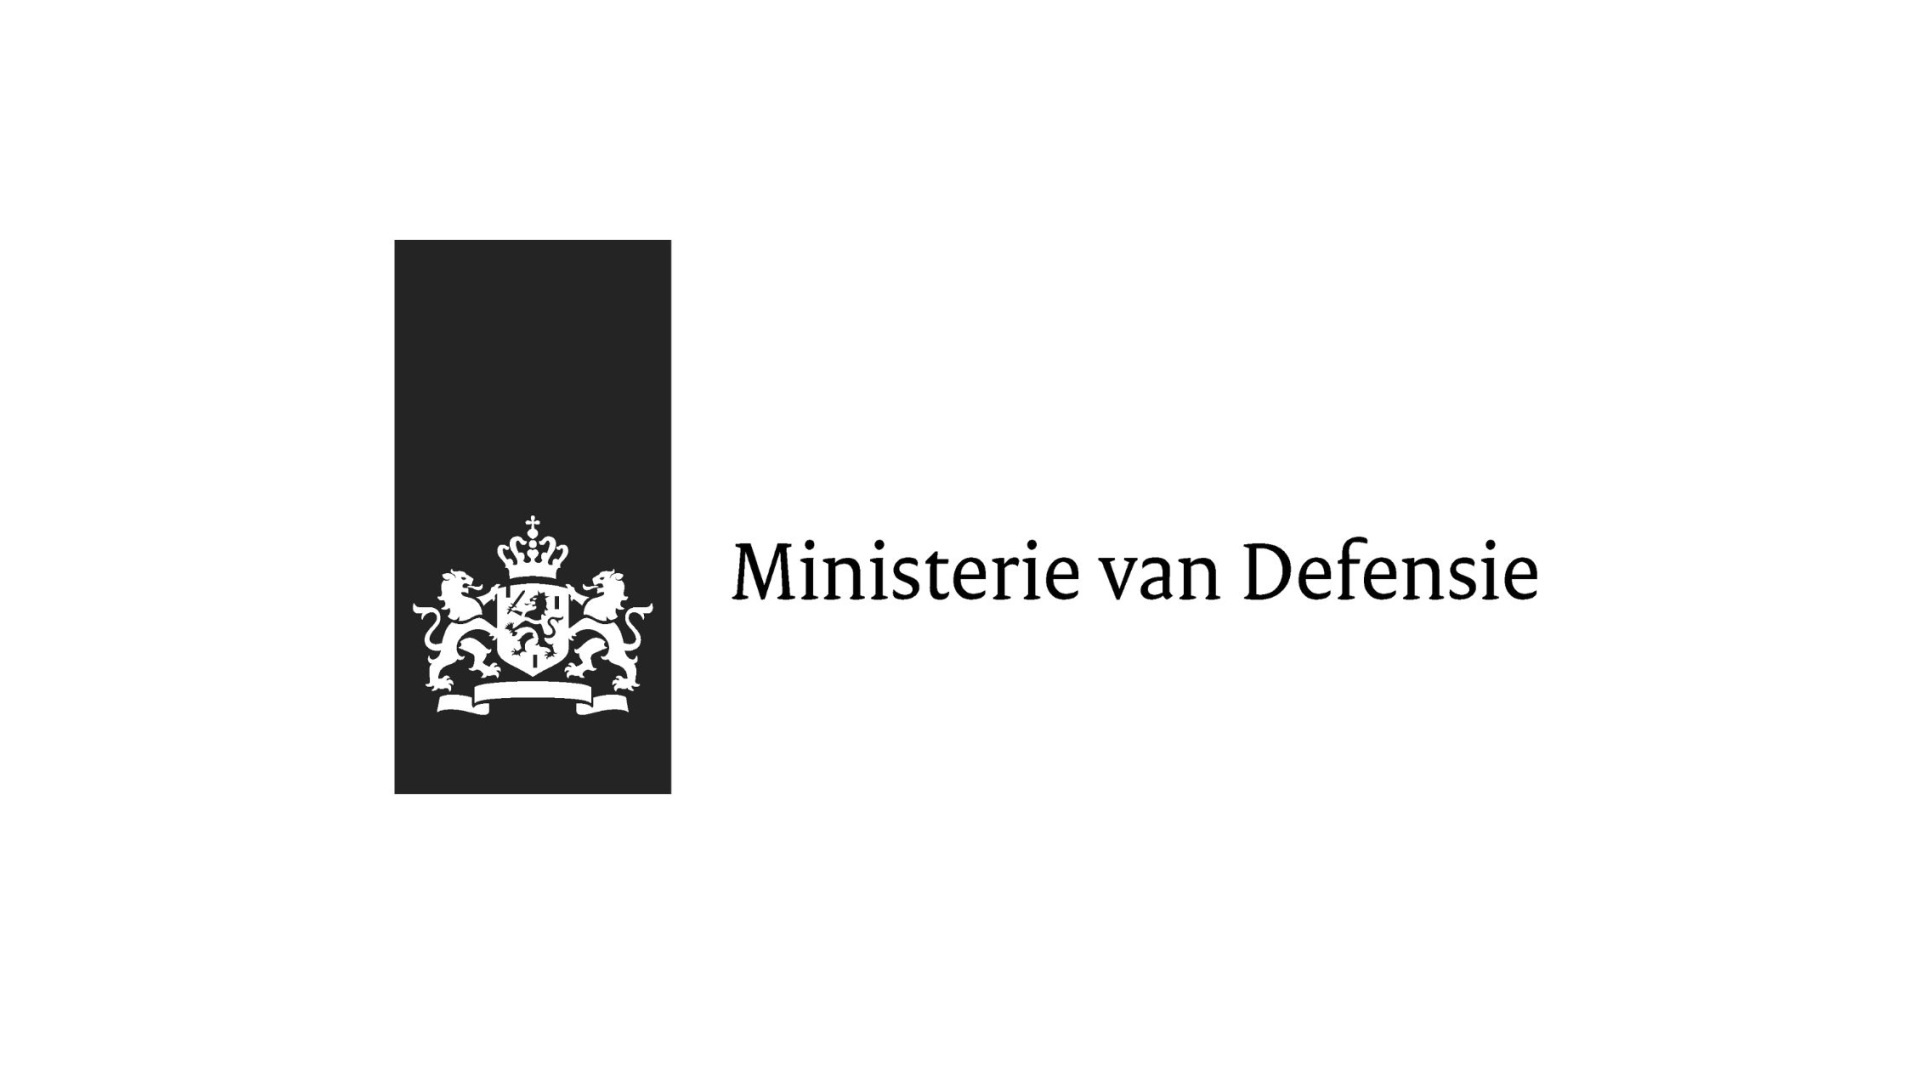 Ministerie-van-Defensie-afbeelding - kopie - kopie